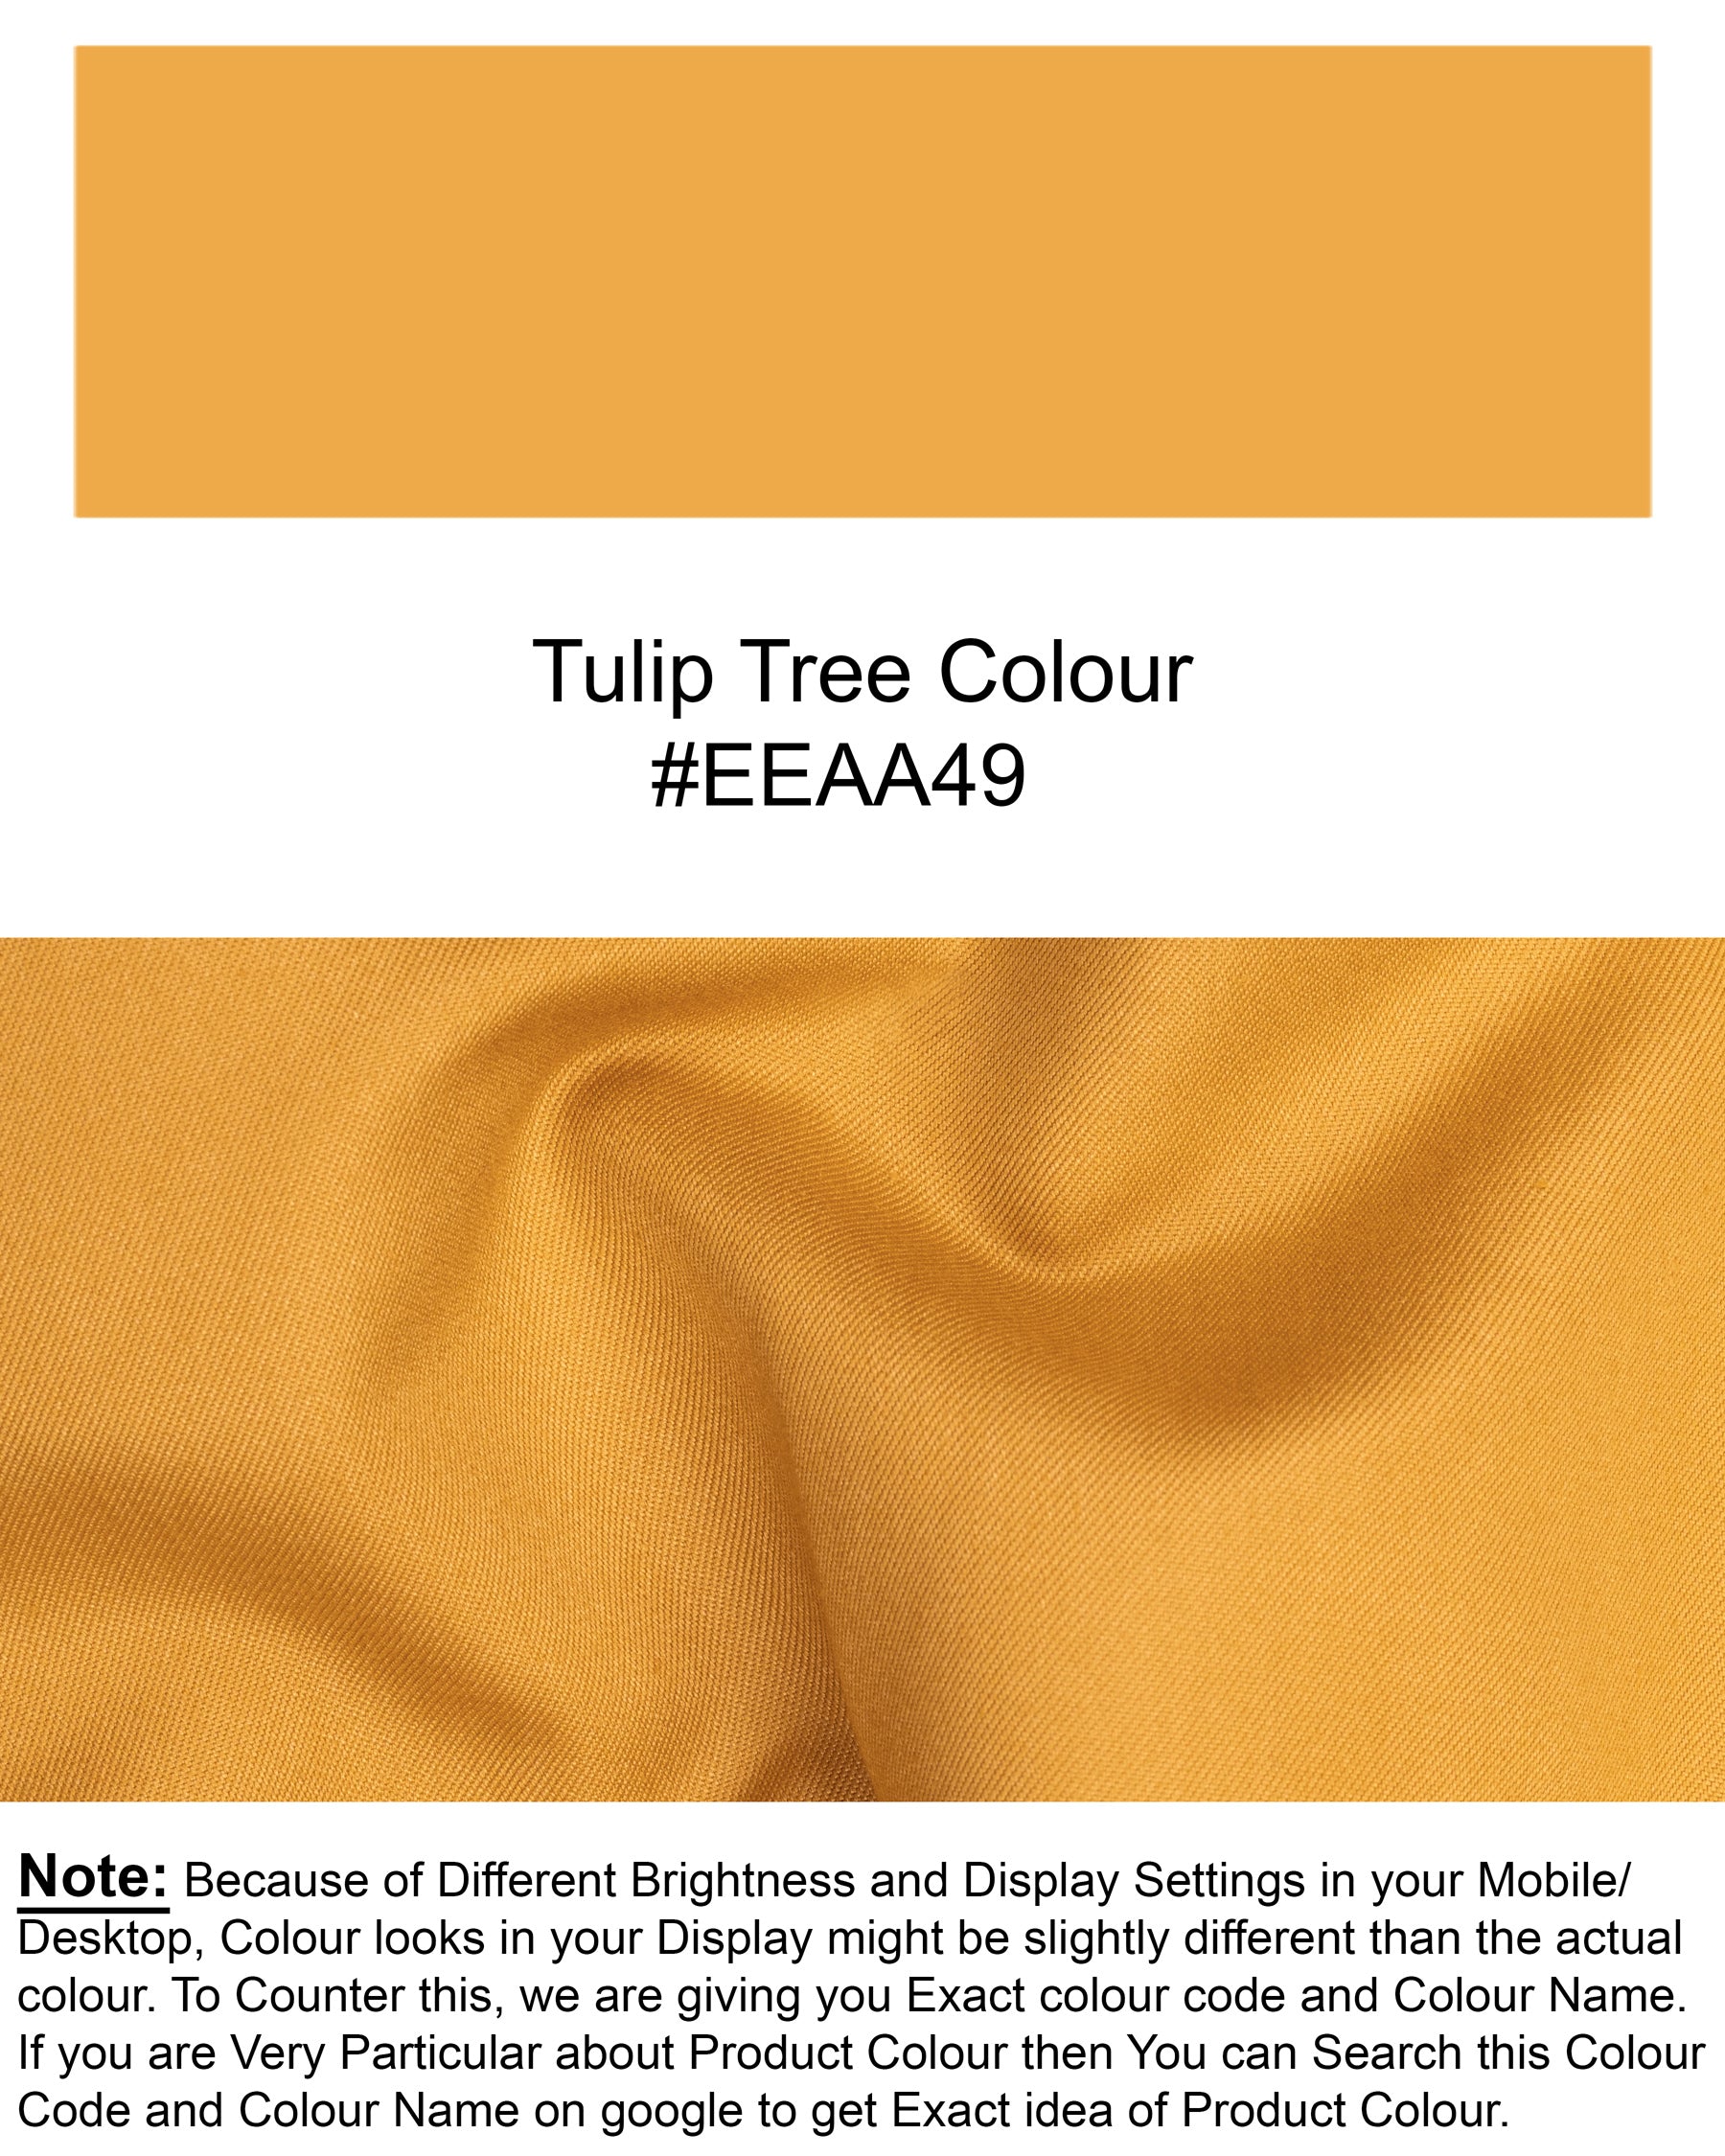 Tulip Tree Orange Solid Suit ST1759-SB-36, ST1759-SB-38, ST1759-SB-40, ST1759-SB-42, ST1759-SB-44, ST1759-SB-46, ST1759-SB-48, ST1759-SB-50, ST1759-SB-52, ST1759-SB-54, ST1759-SB-56, ST1759-SB-58, ST1759-SB-60